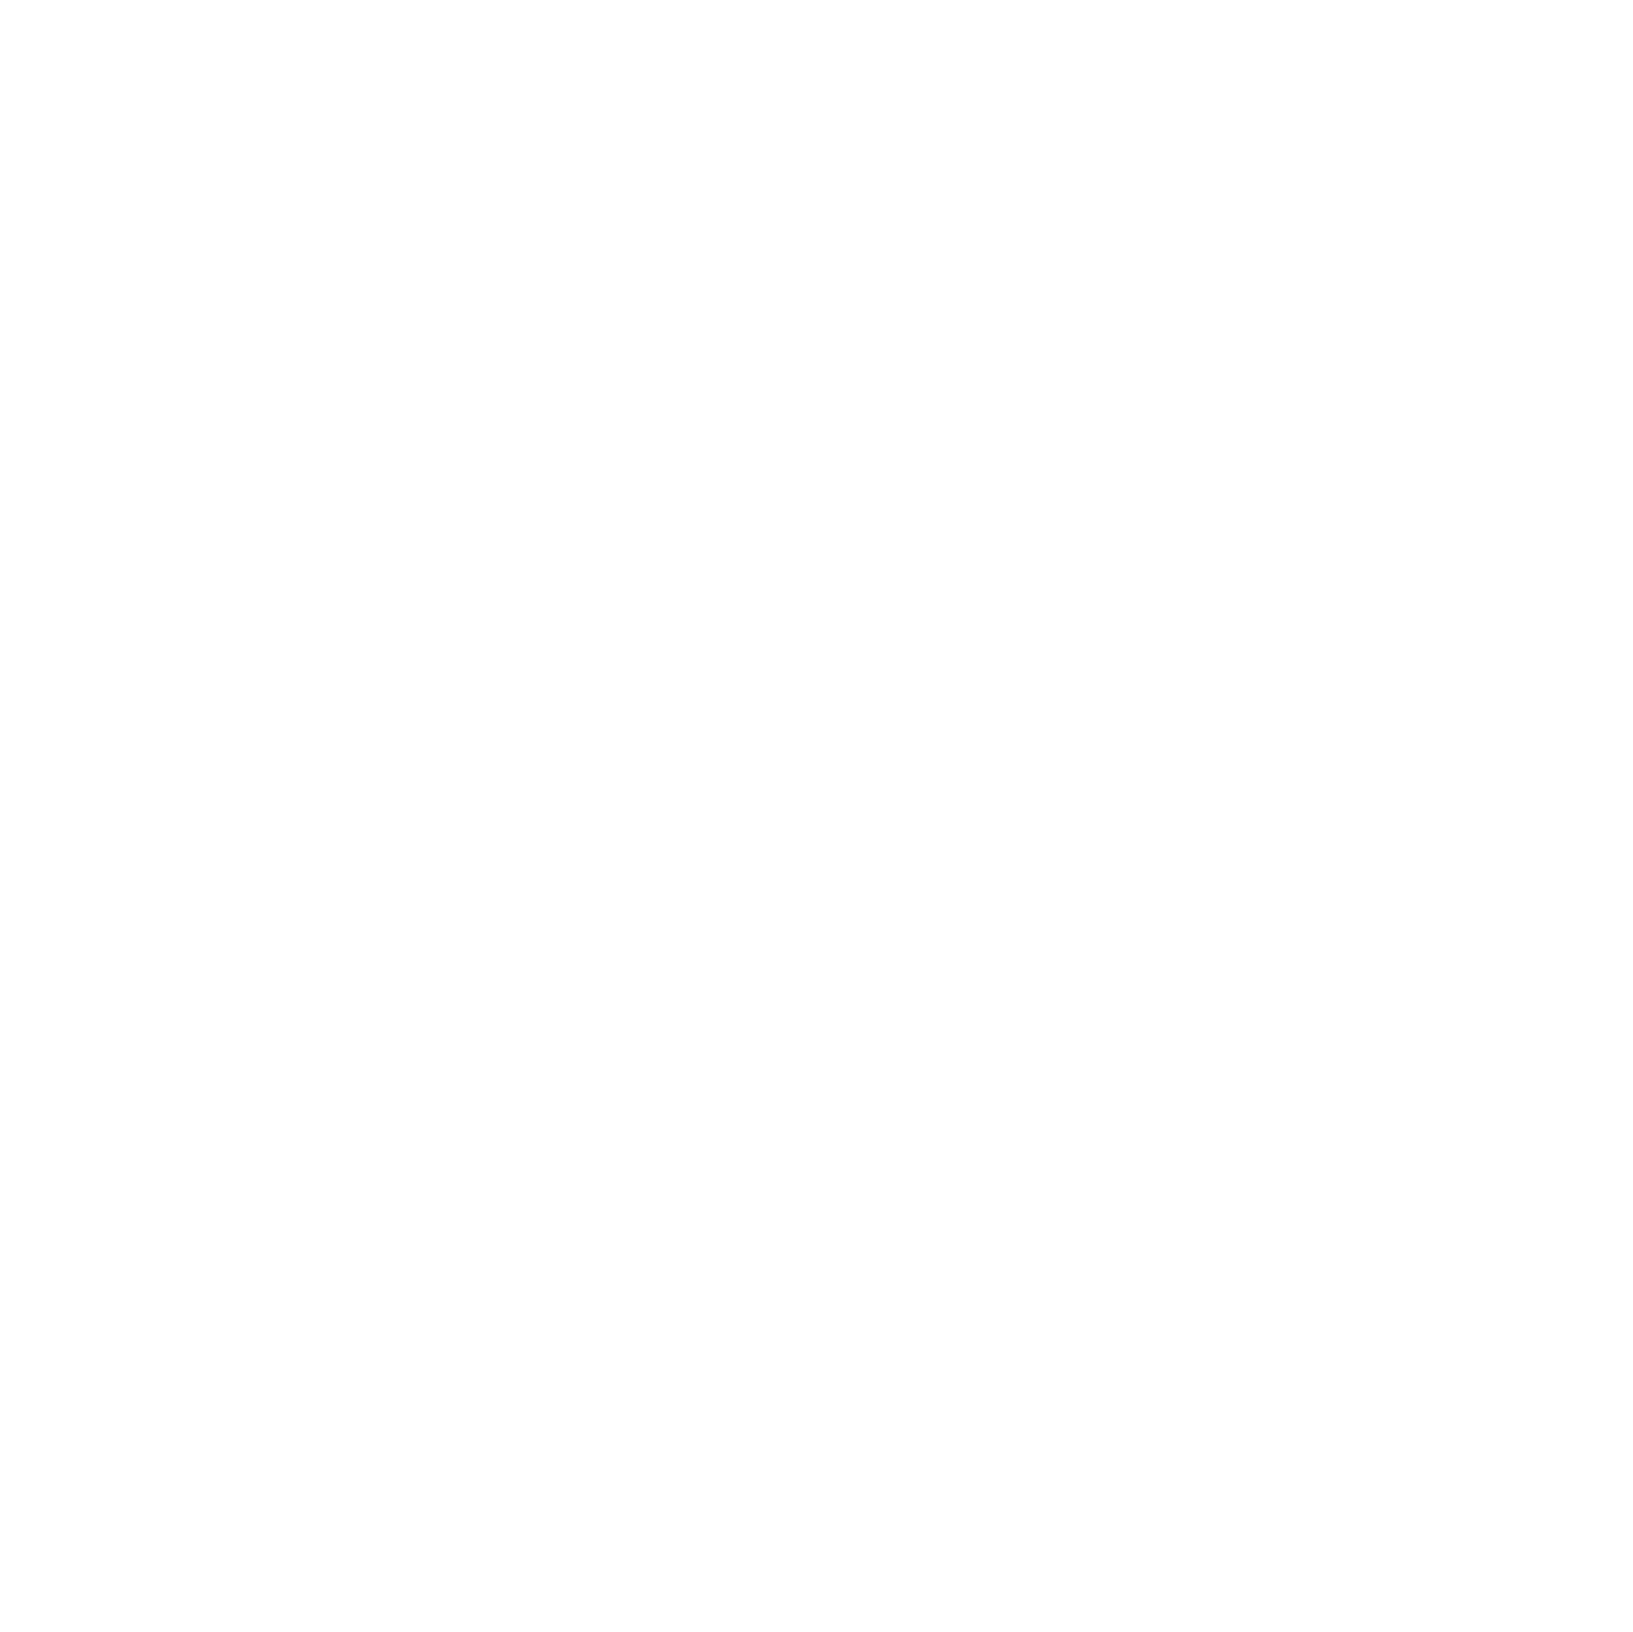 M99 Studios